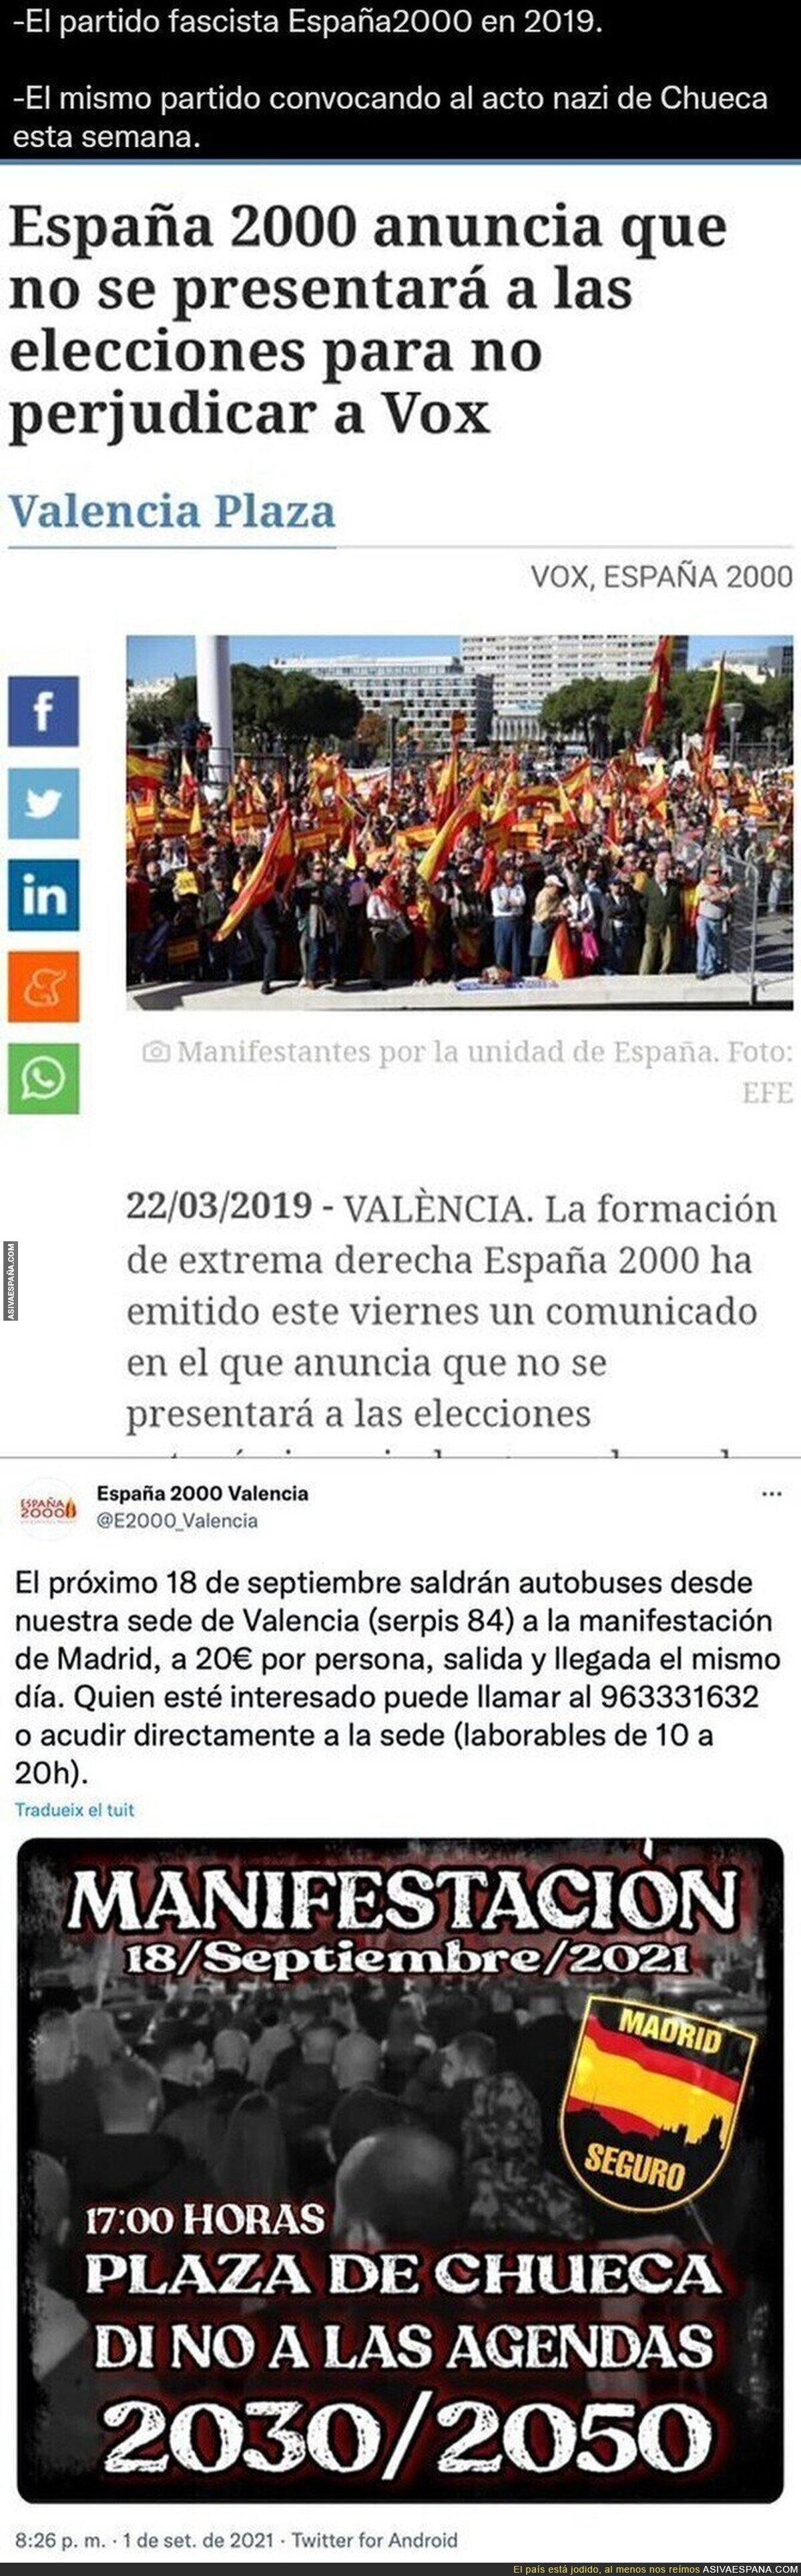 La curiosa relación entre España 2000 y VOX